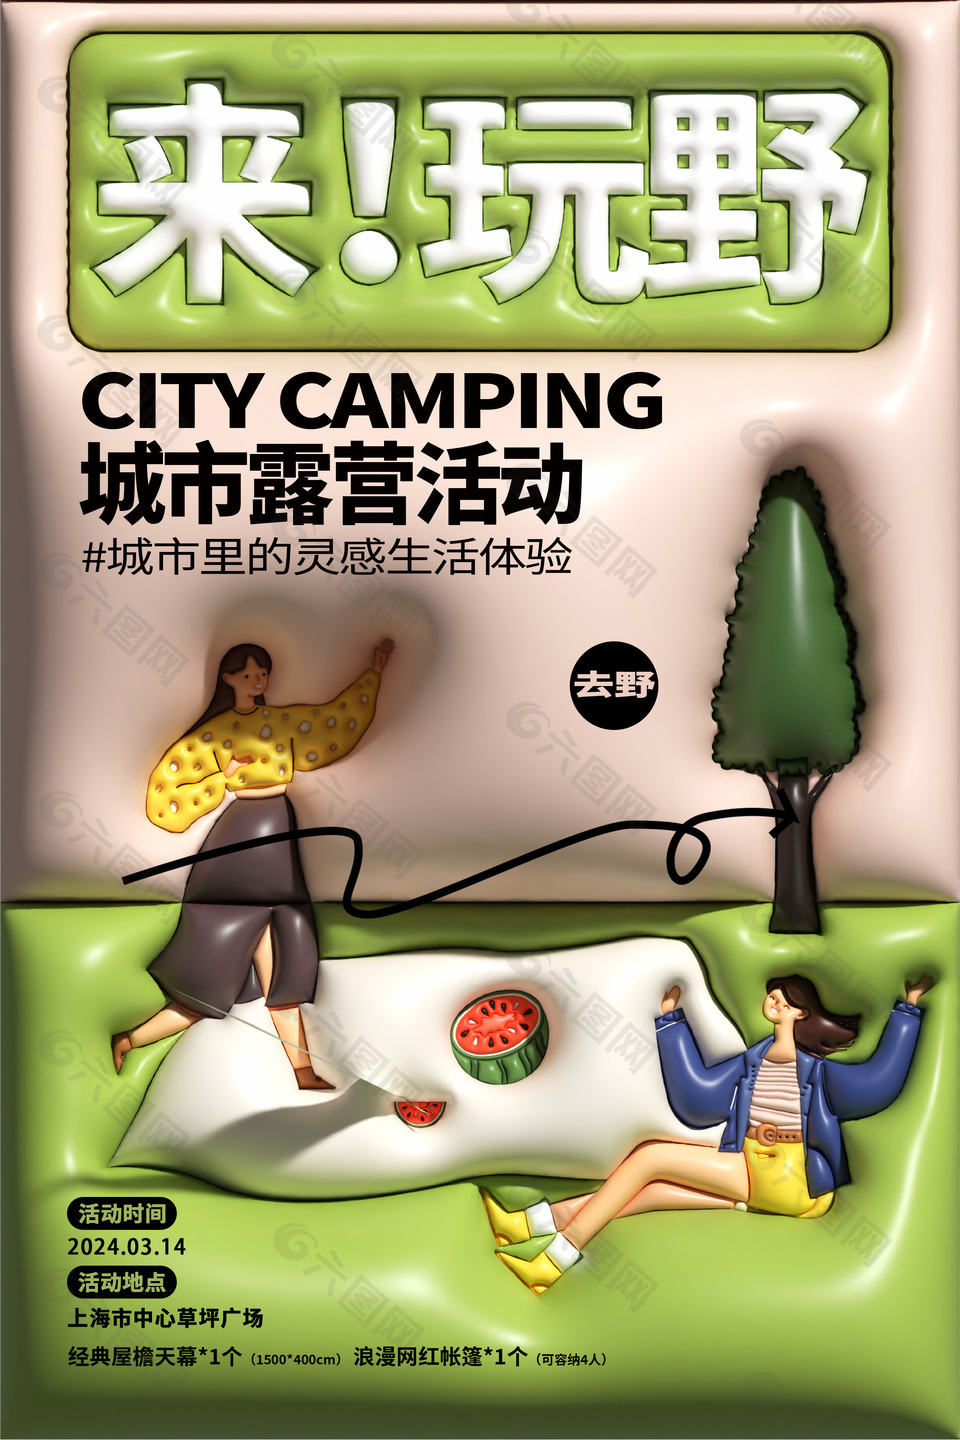 春日生活体验城市露营活动创意海报设计